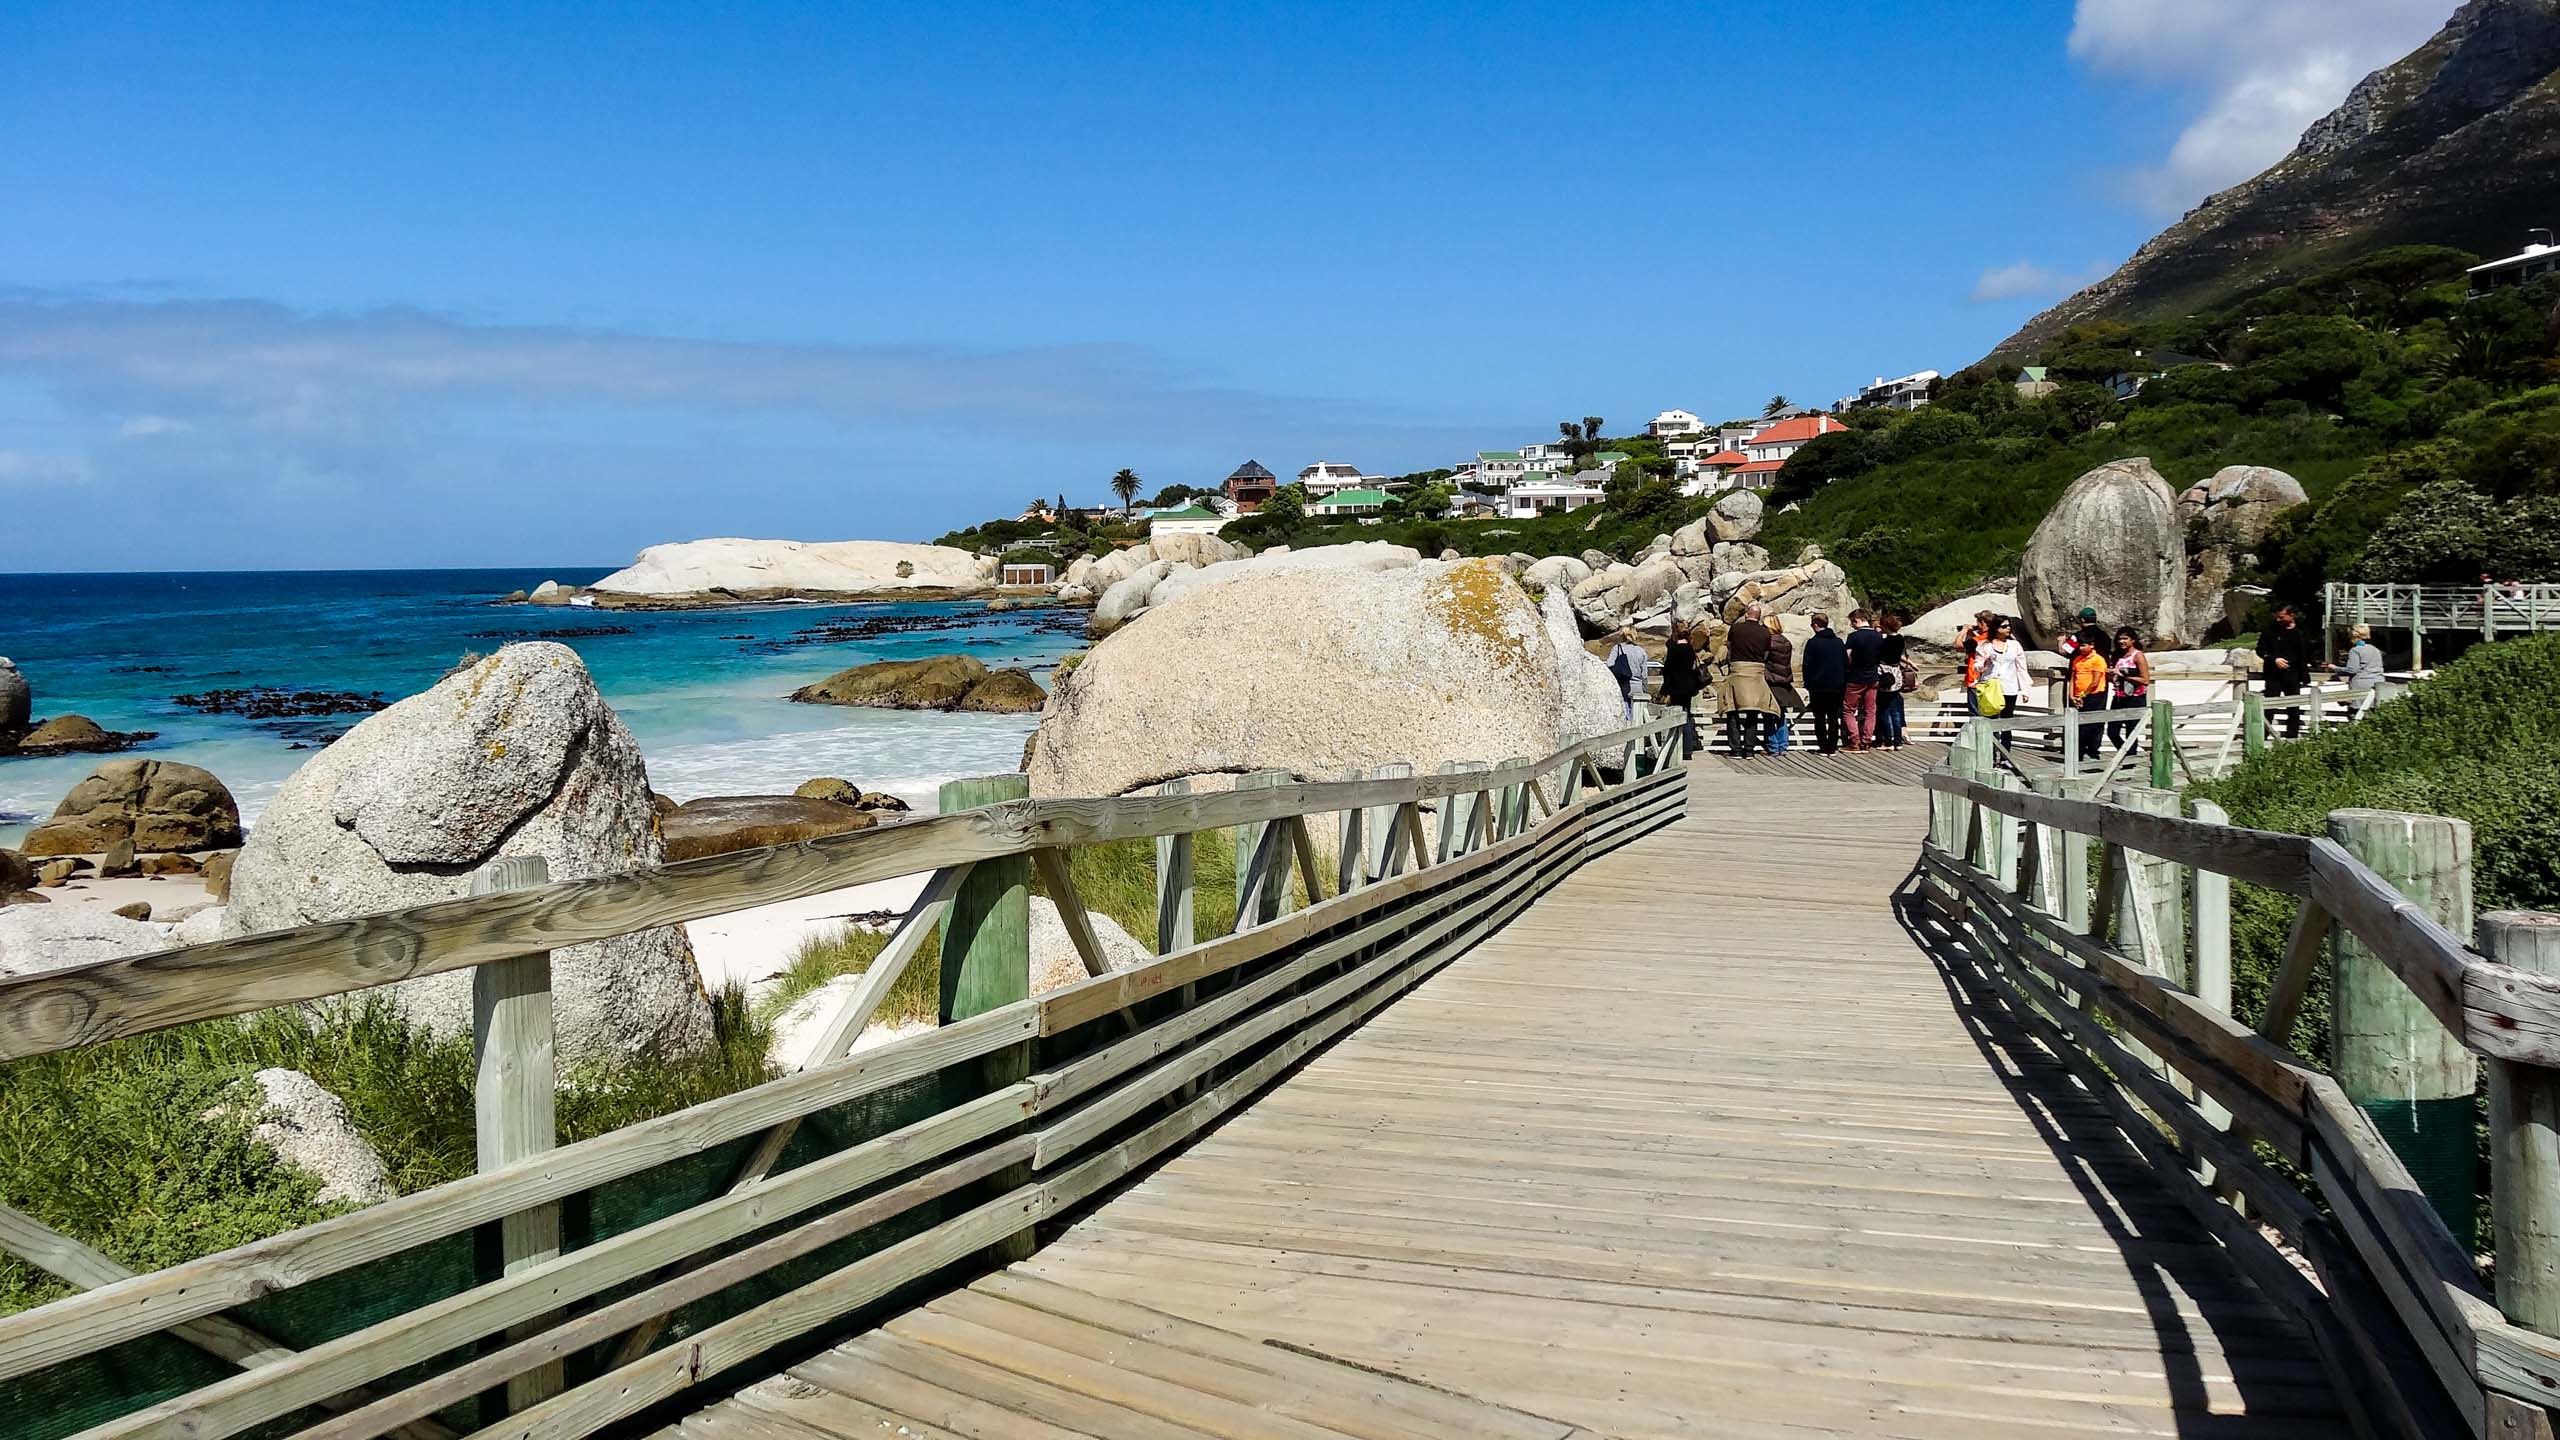 South Africa boardwalk by ocean